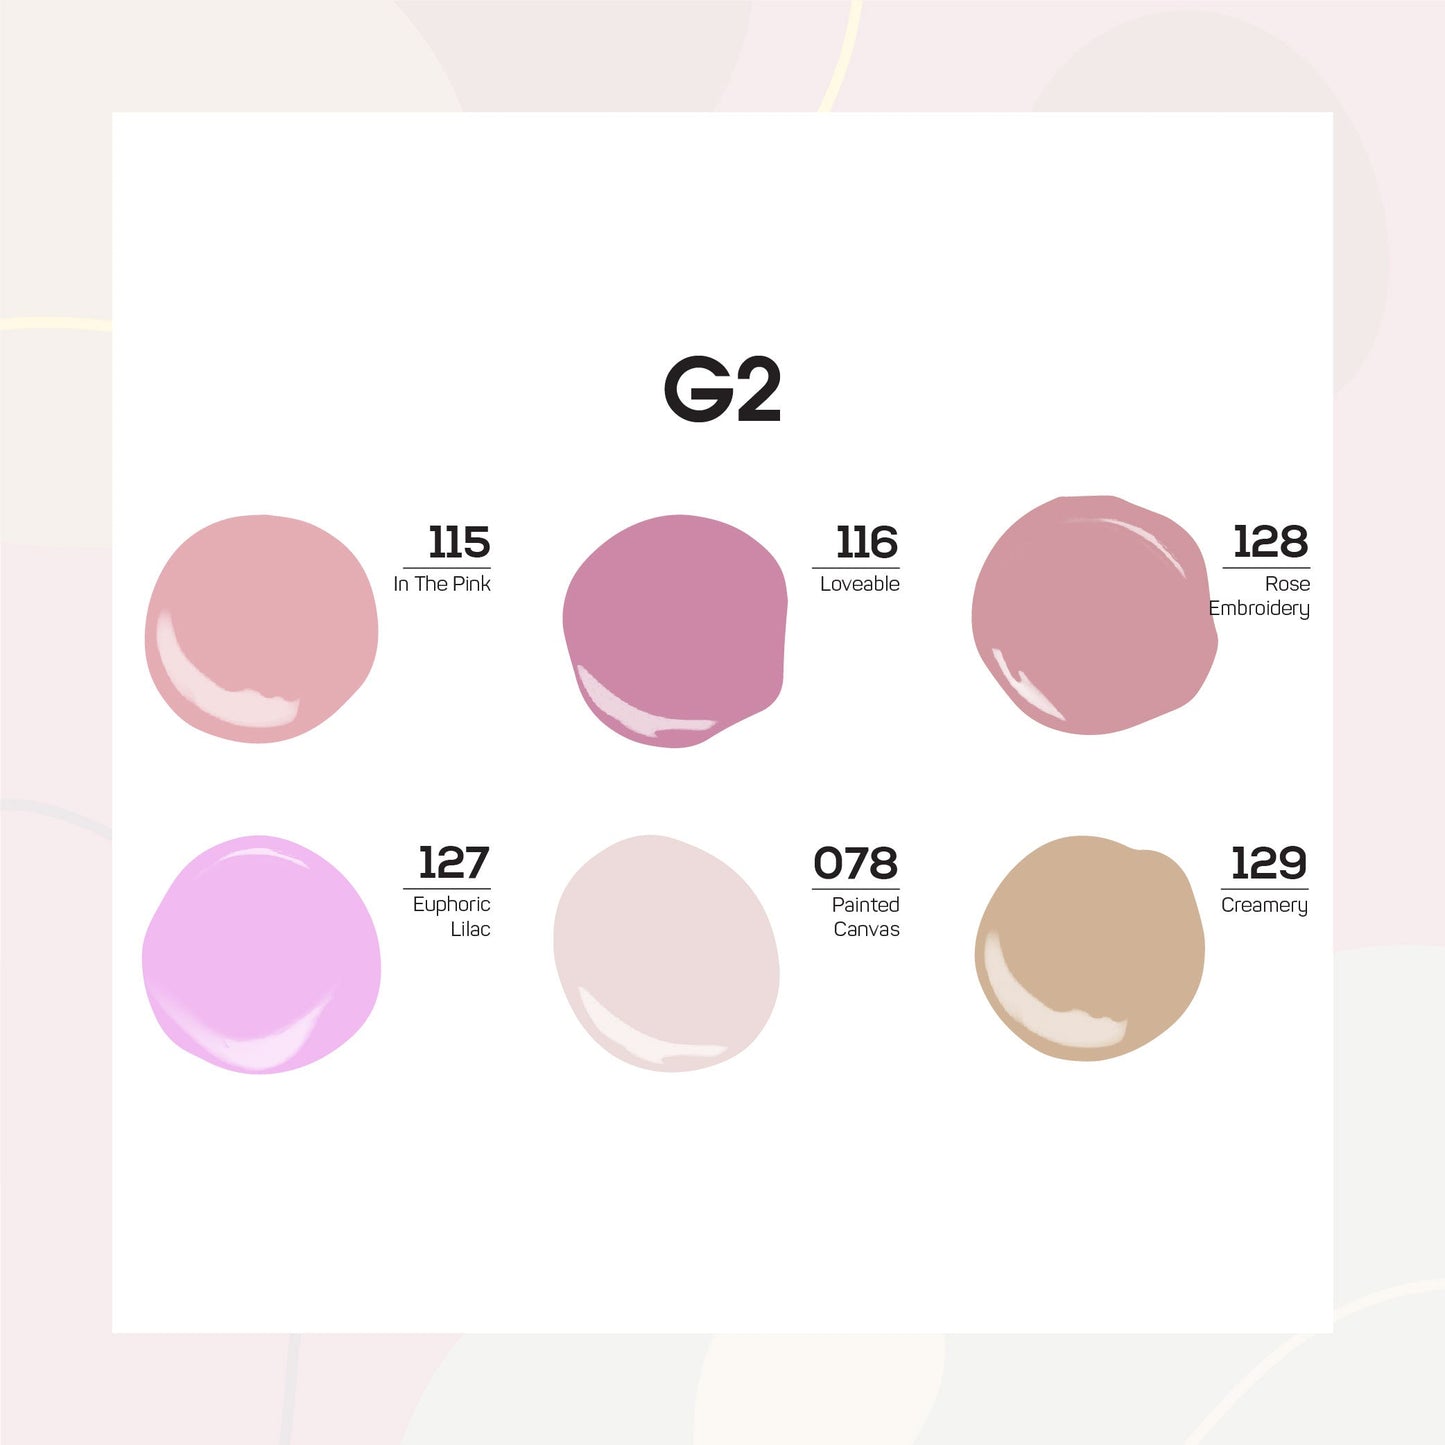 Lavis  Gel Color Set G2 (6 colors) : 115, 116, 128, 137, 078, 129Lavis  Gel Color Set G2 (6 colors) : 115, 116, 128, 137, 078, 129